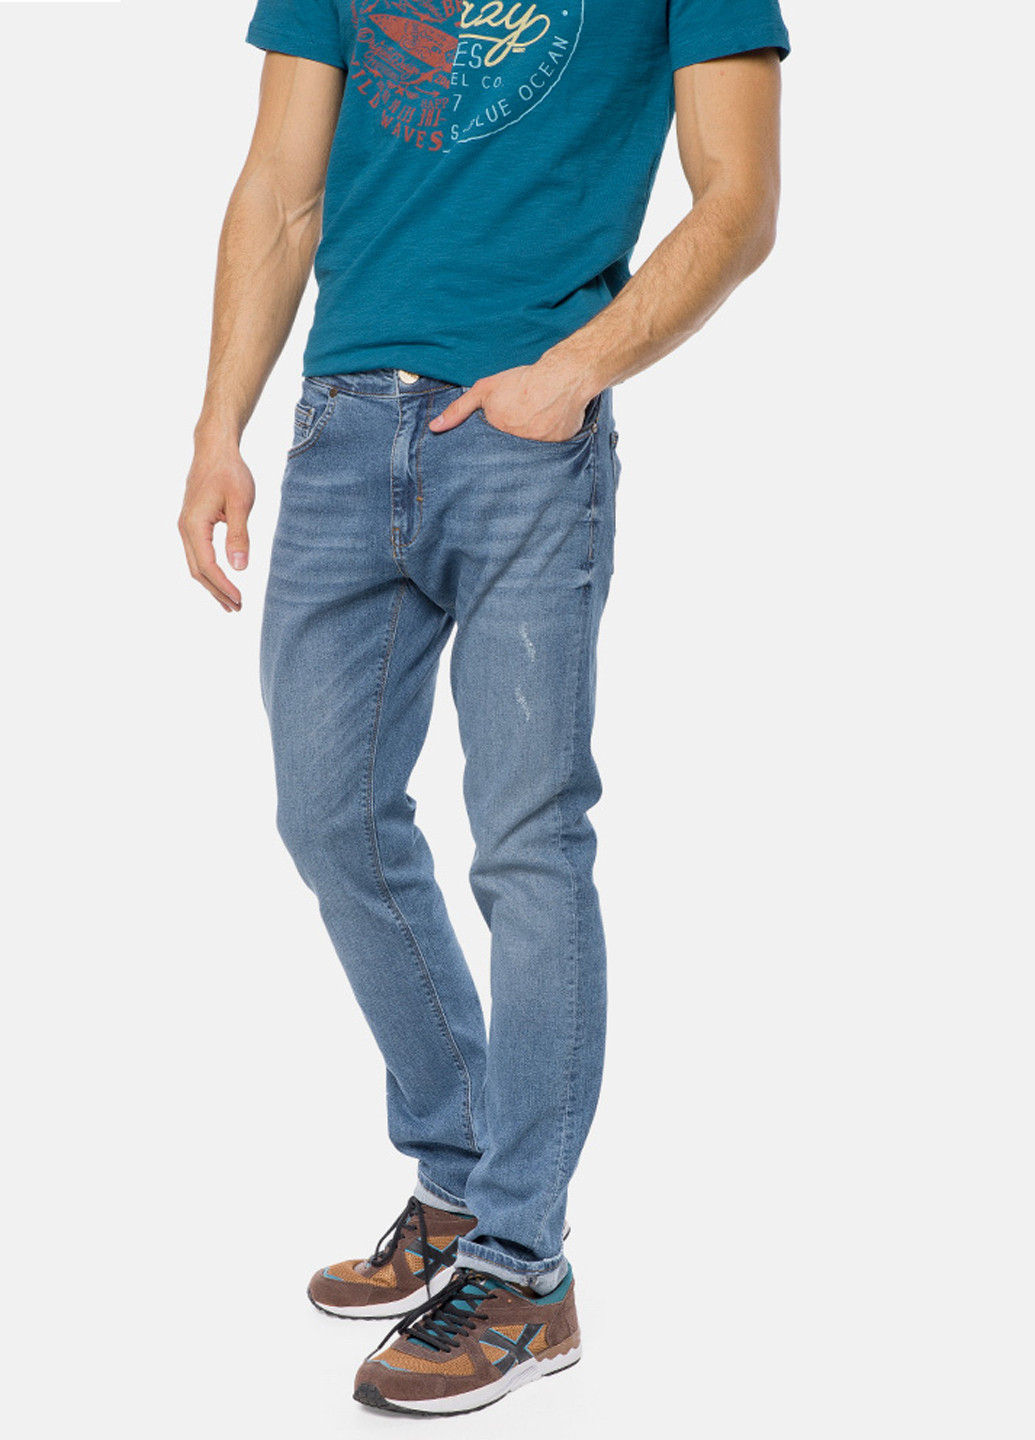 Джинси MR 520 середня талія однотонні сині джинсові